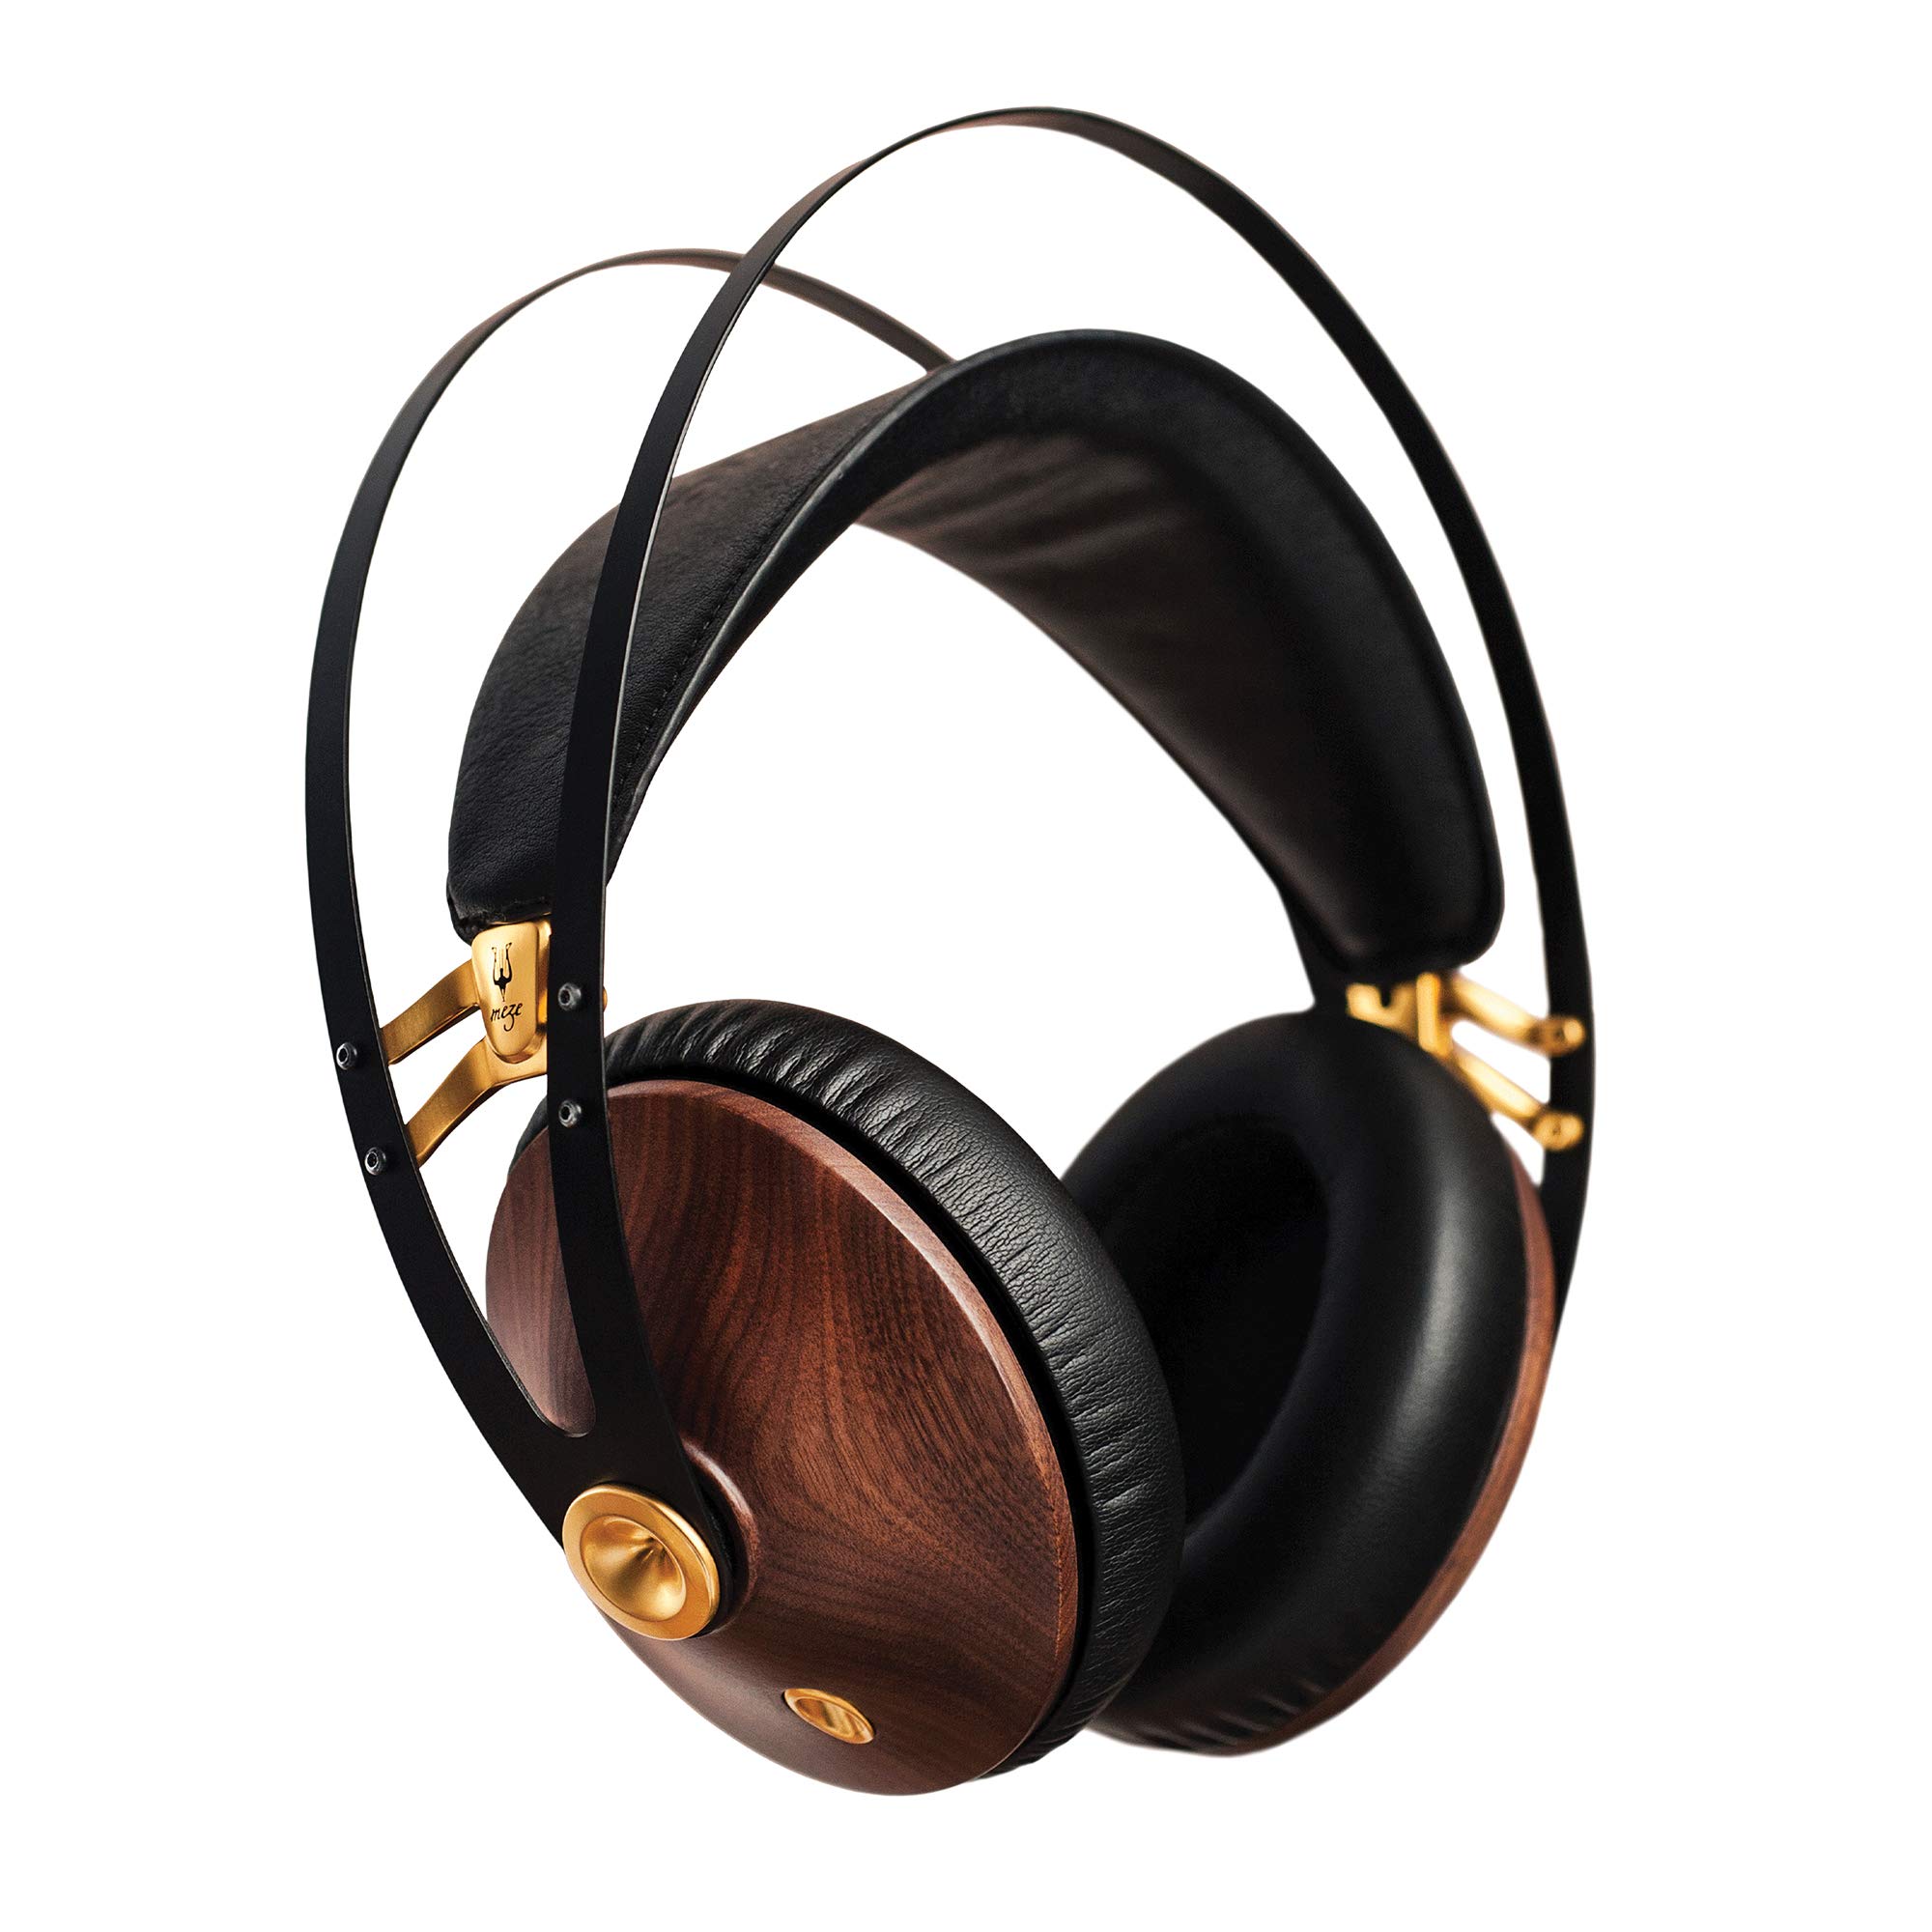 Meze Headphones Meze 99 Clássicos Noz Dourado | Fones de ouvido com fio com microfone e faixa de cabeça auto-ajustável | Fone de ouvido clássico fechado de madeira para audiófilos